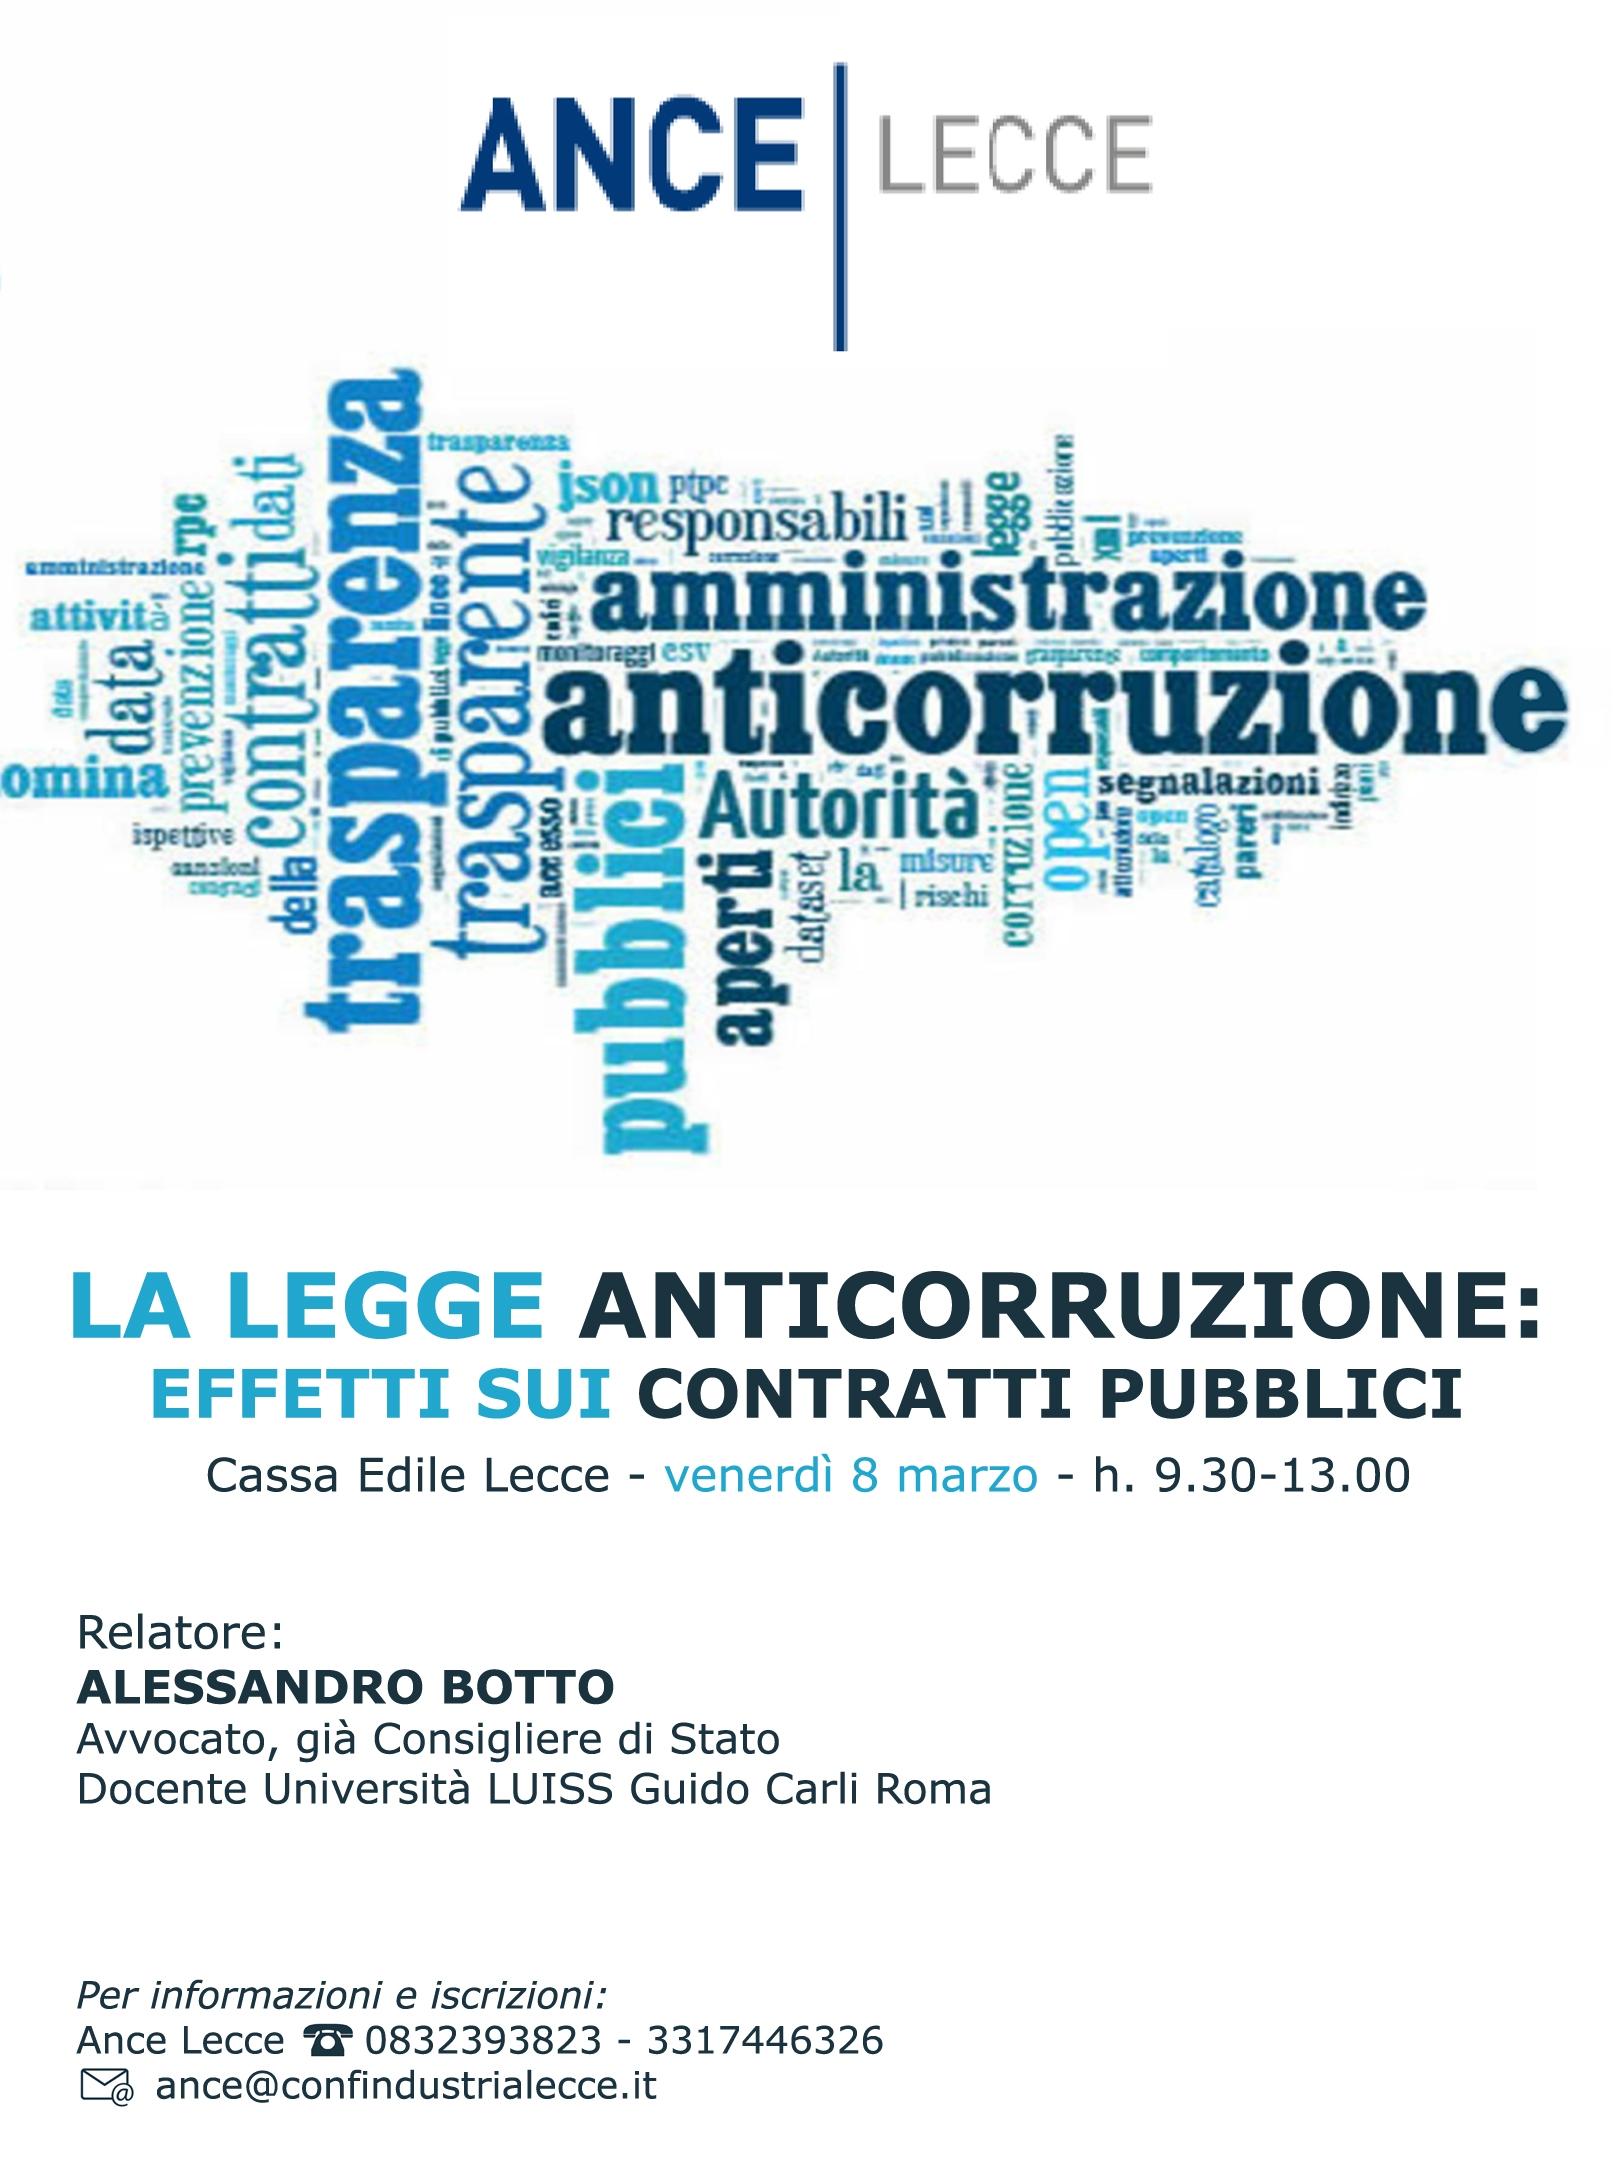 Incontro ANCE Lecce: “La Legge Anticorruzione: effetti sui contratti pubblici” – Lecce 08/03/2019